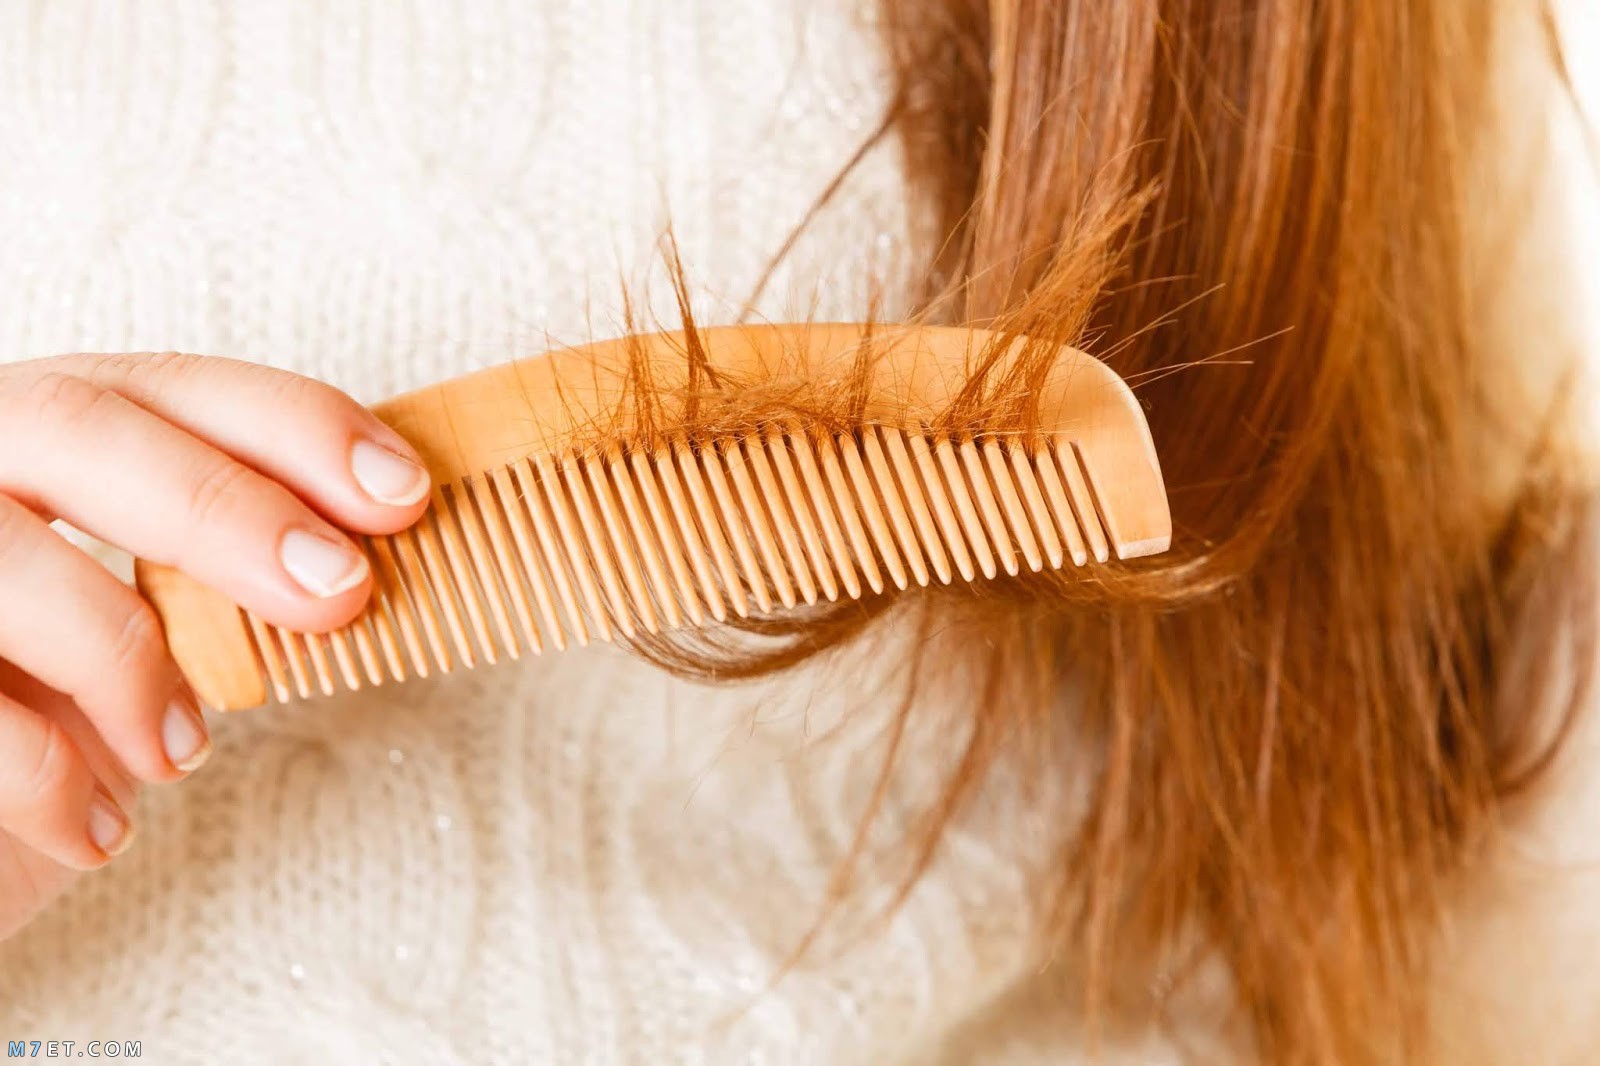 حل لتساقط الشعر| 3 وصفات طبيعية لشعر أكثر صحة